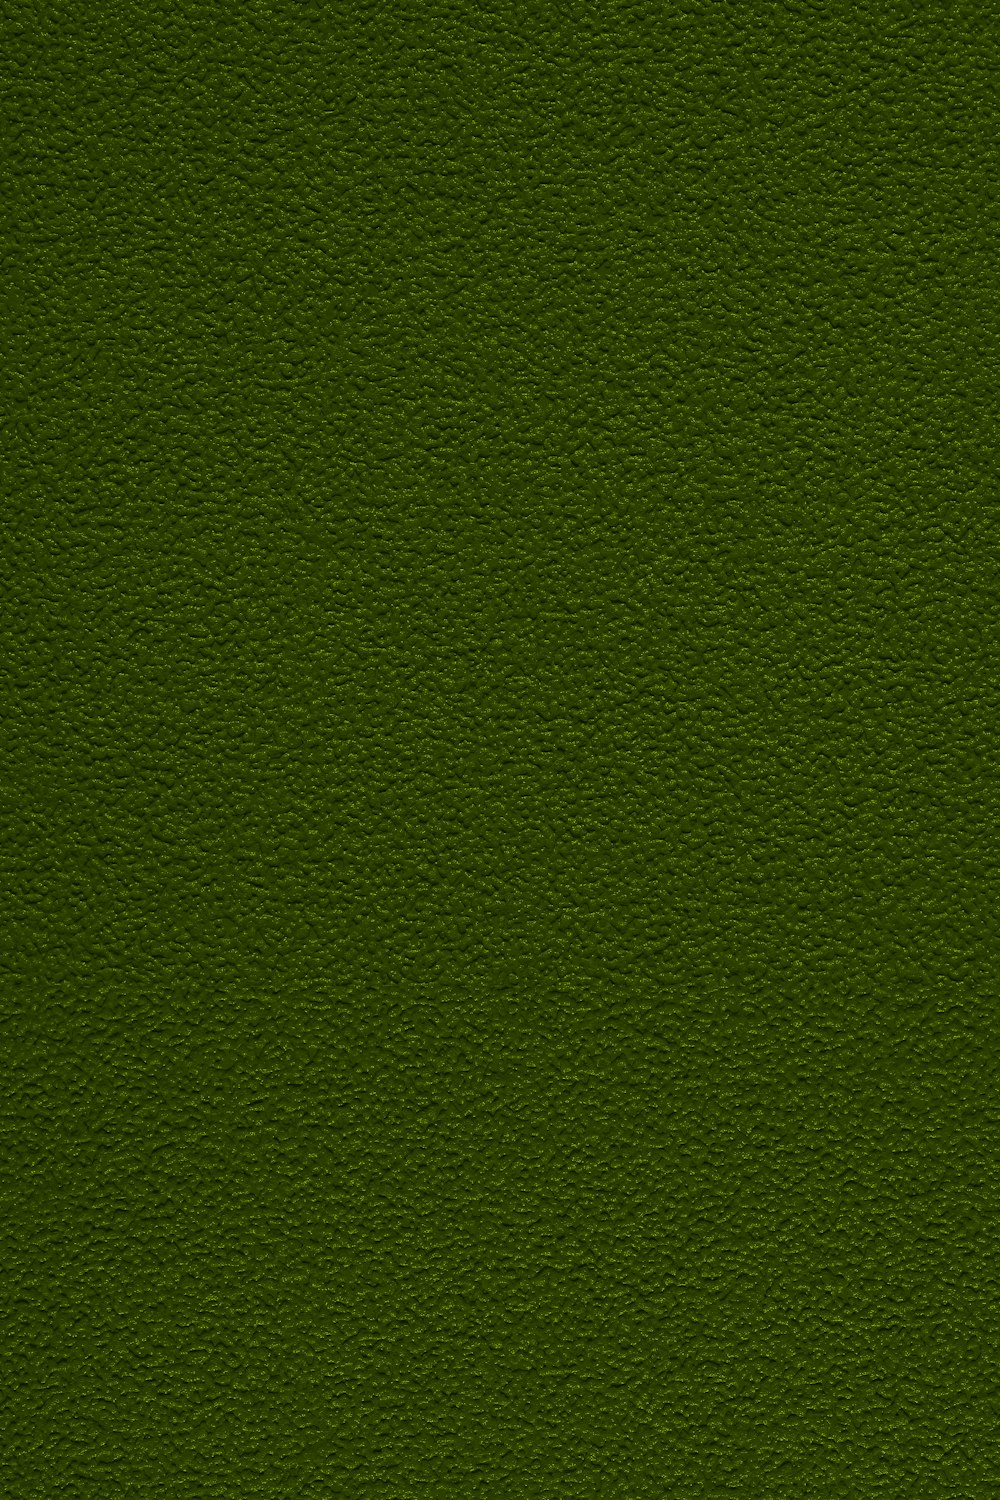 um close up de uma superfície verde com um pequeno pedaço de grama